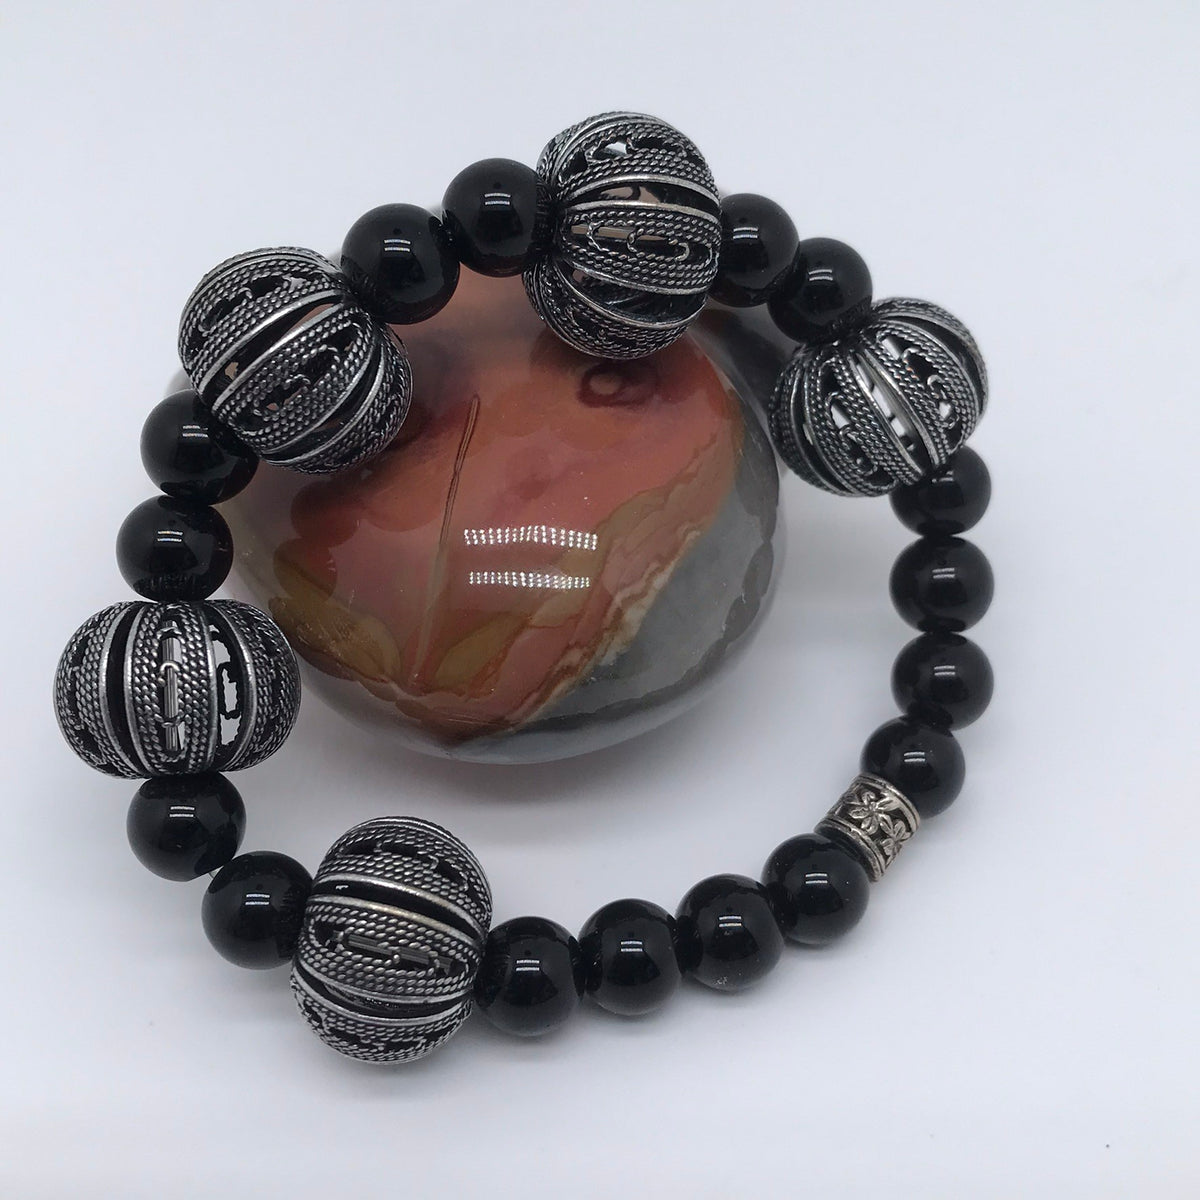 Bracelet obsidienne noire et perles argent 1031